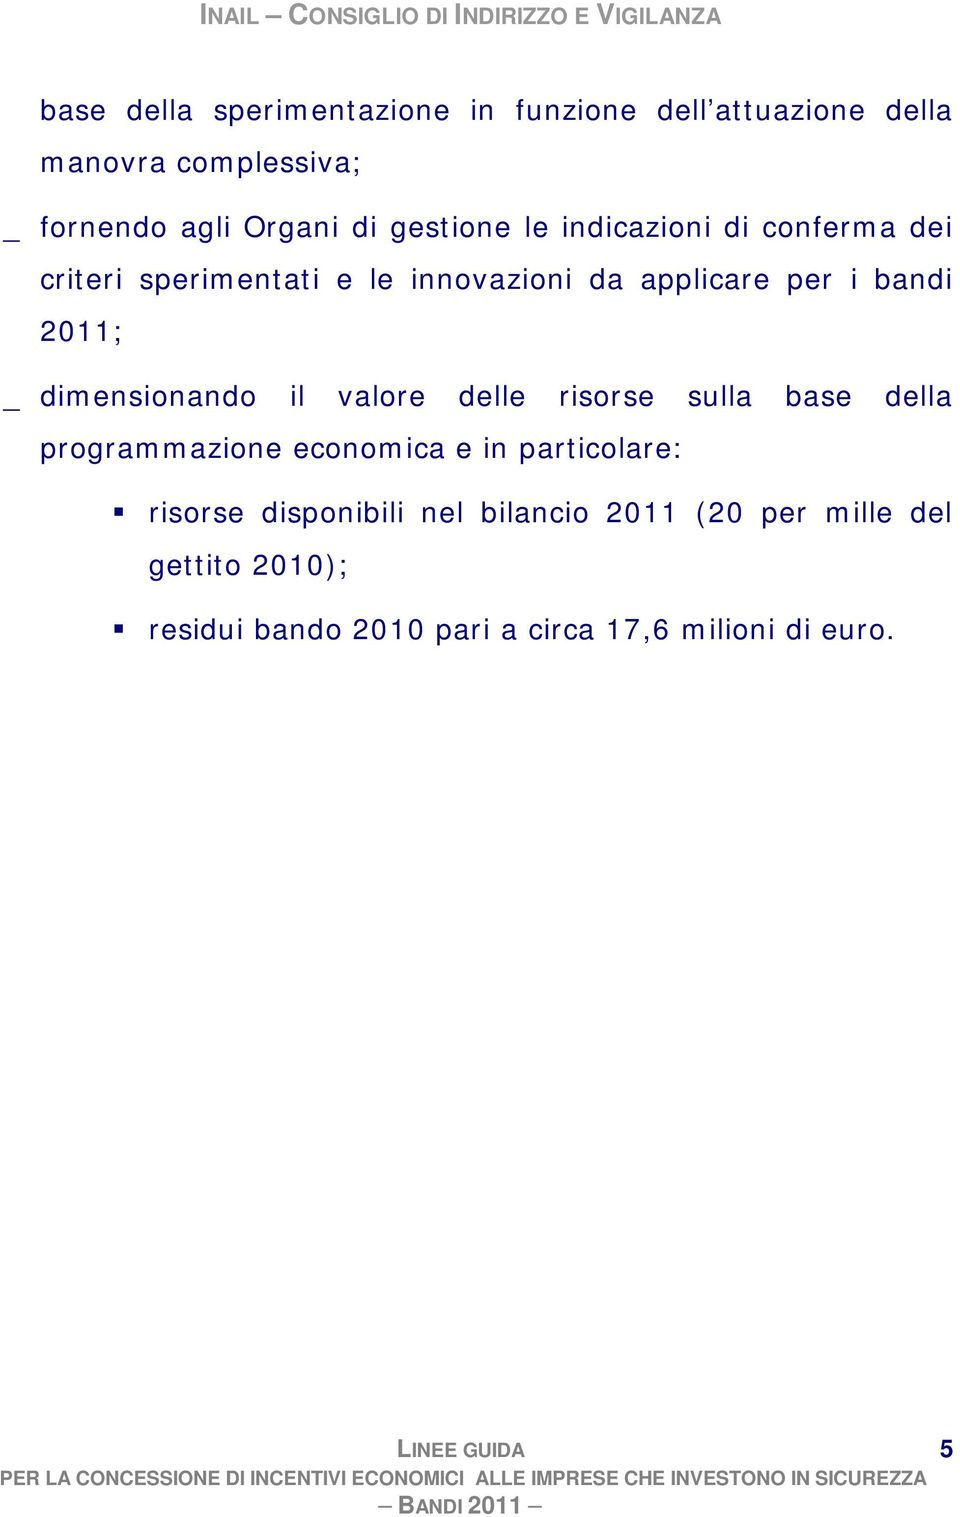 risorse sulla base della programmazione economica e in particolare: risorse disponibili nel bilancio 2011 (20 per mille del gettito 2010); residui